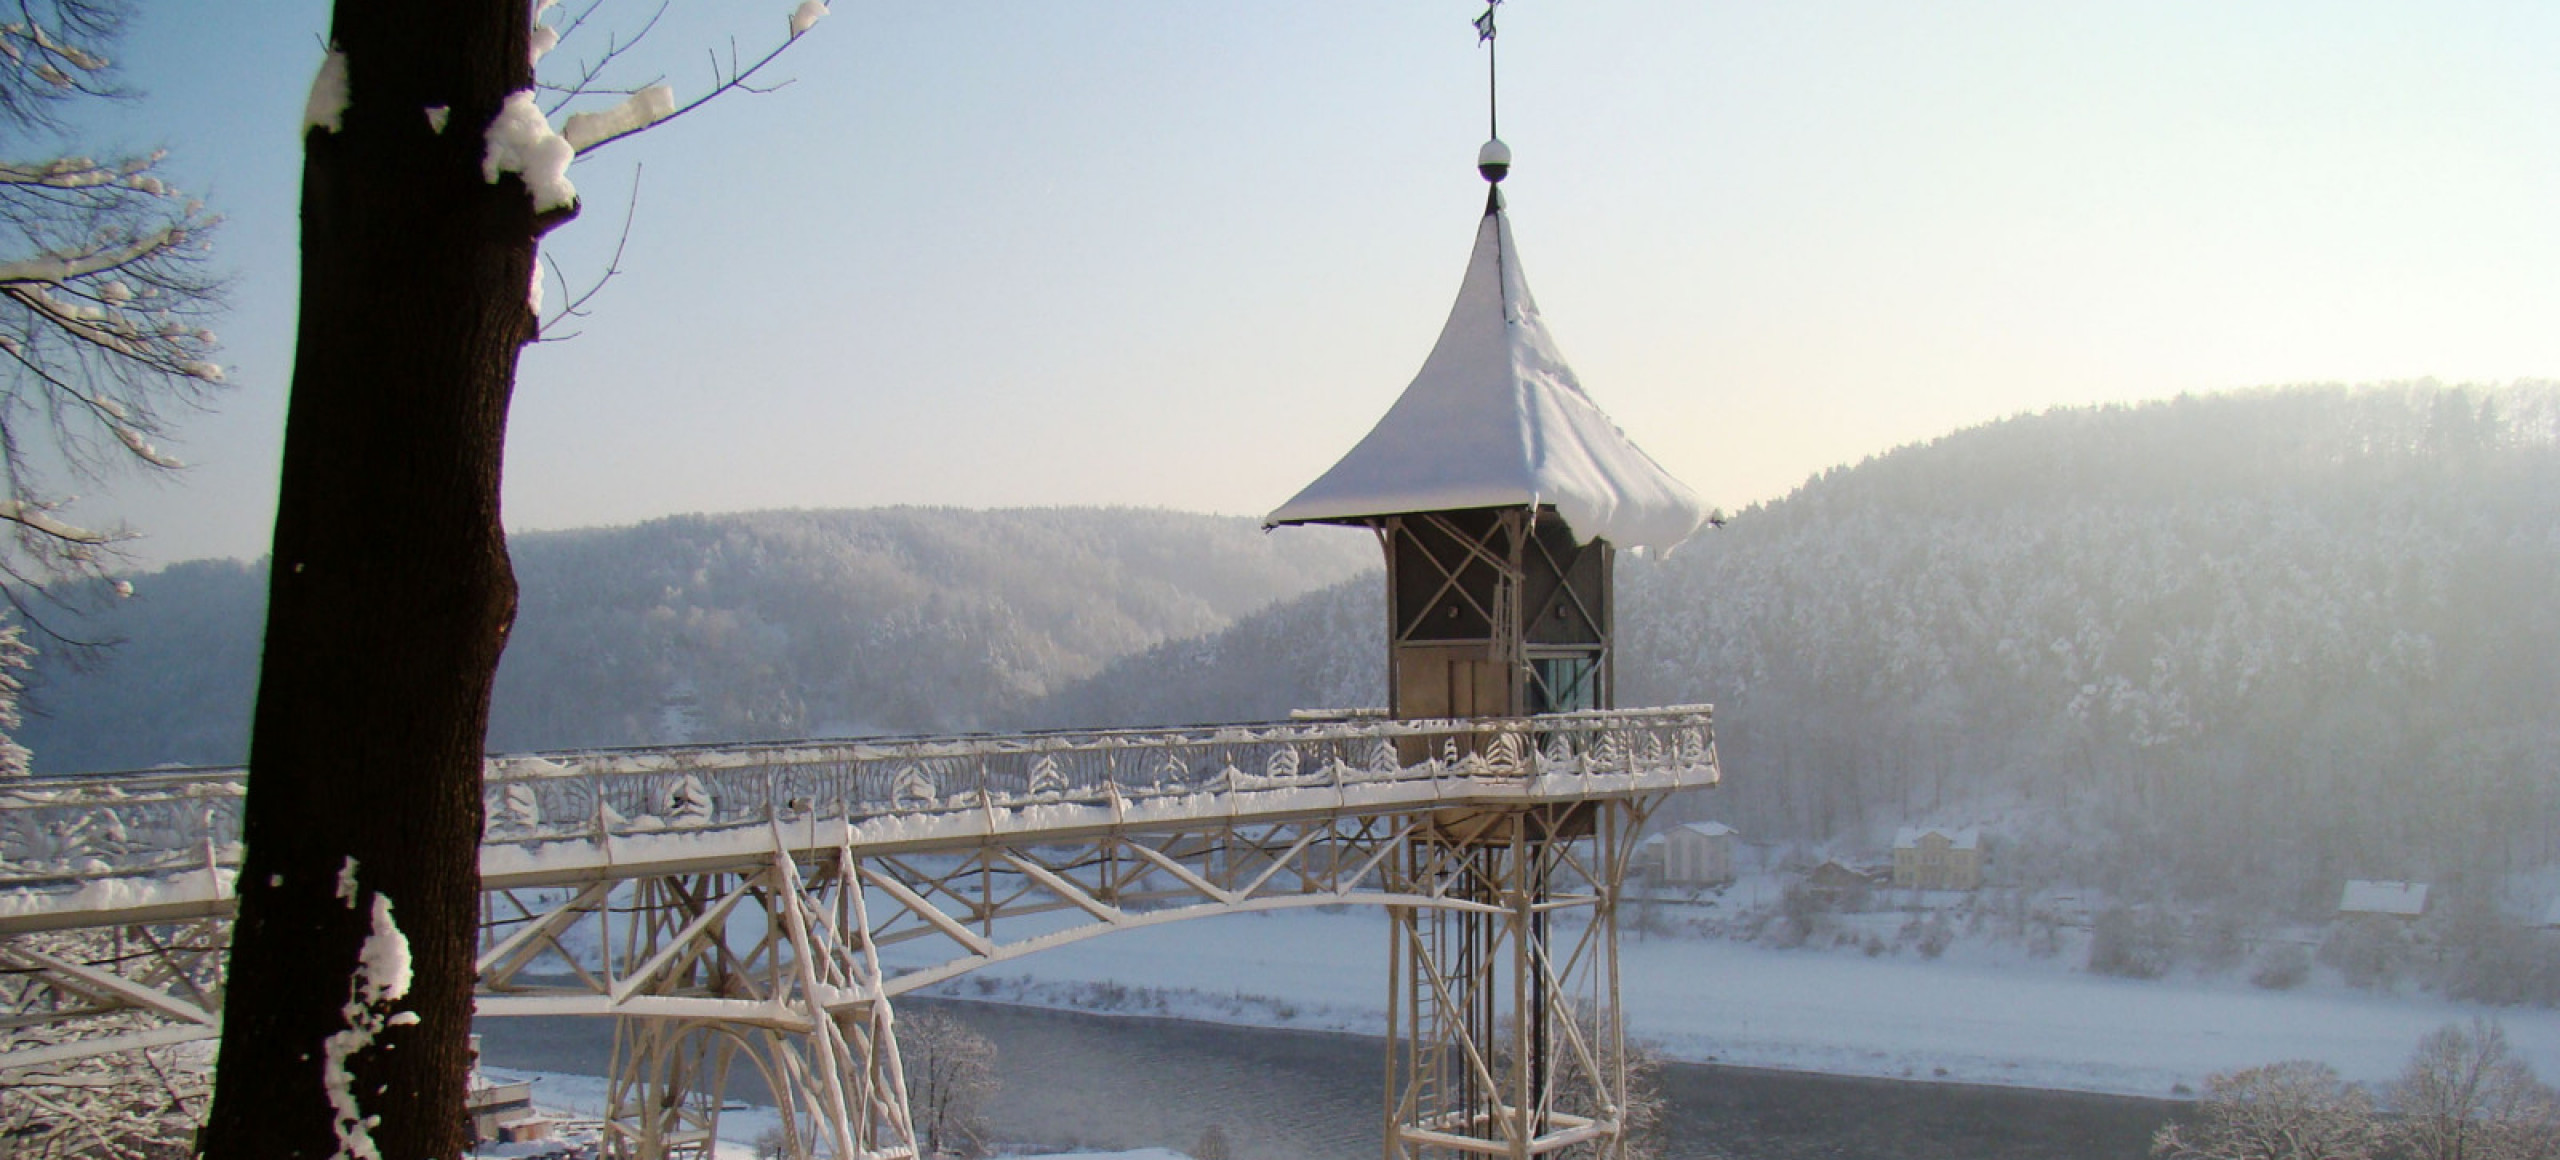 Historischer Personenaufzug Bad Schandau im Winter